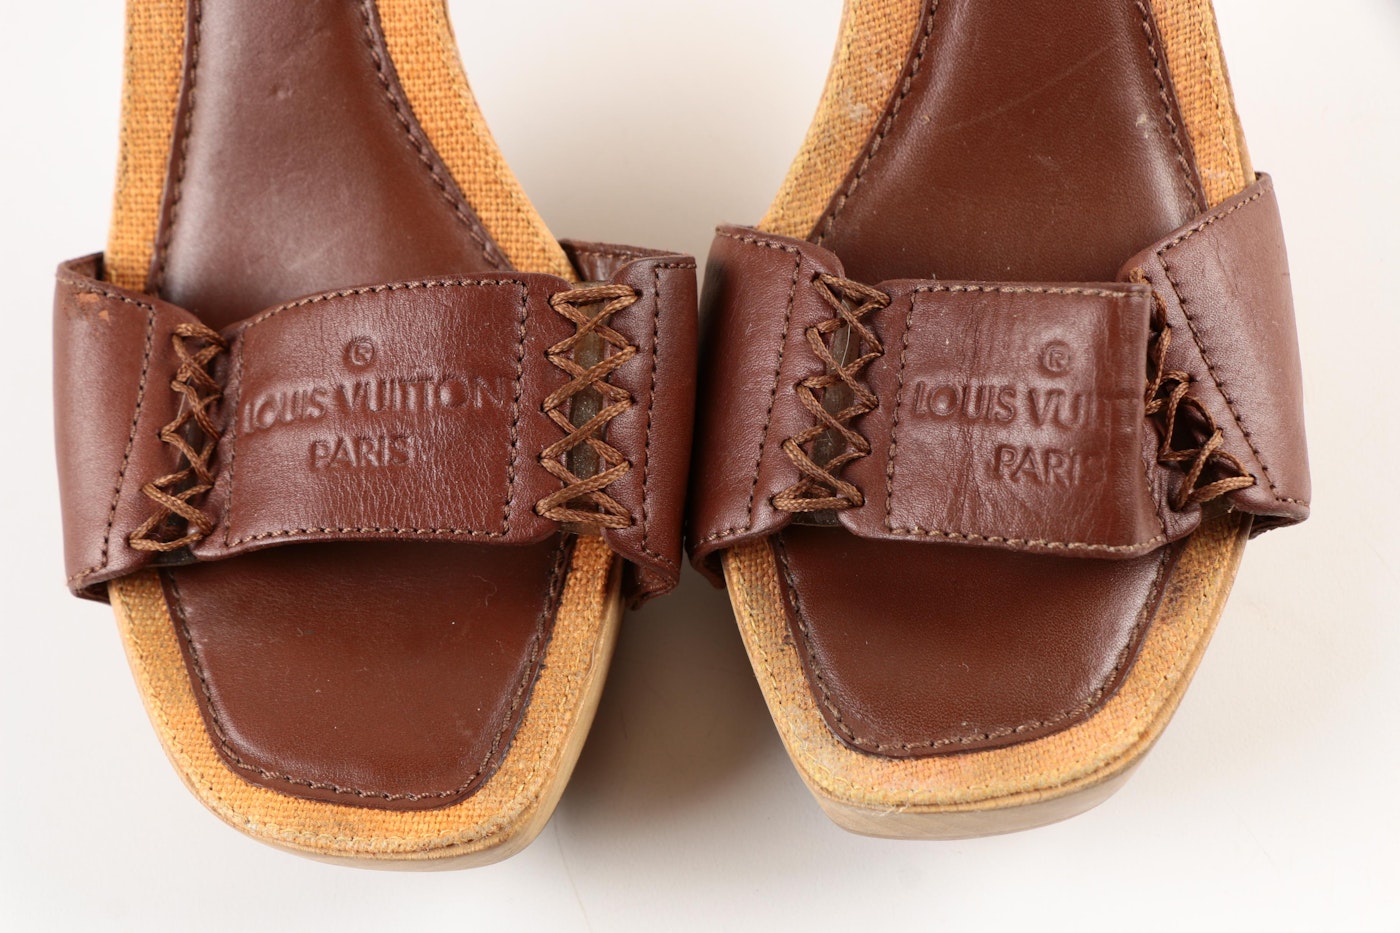 LOUIS VUITTON beige Monogram Vernis leather MARY JANE Pumps Shoes 37.5